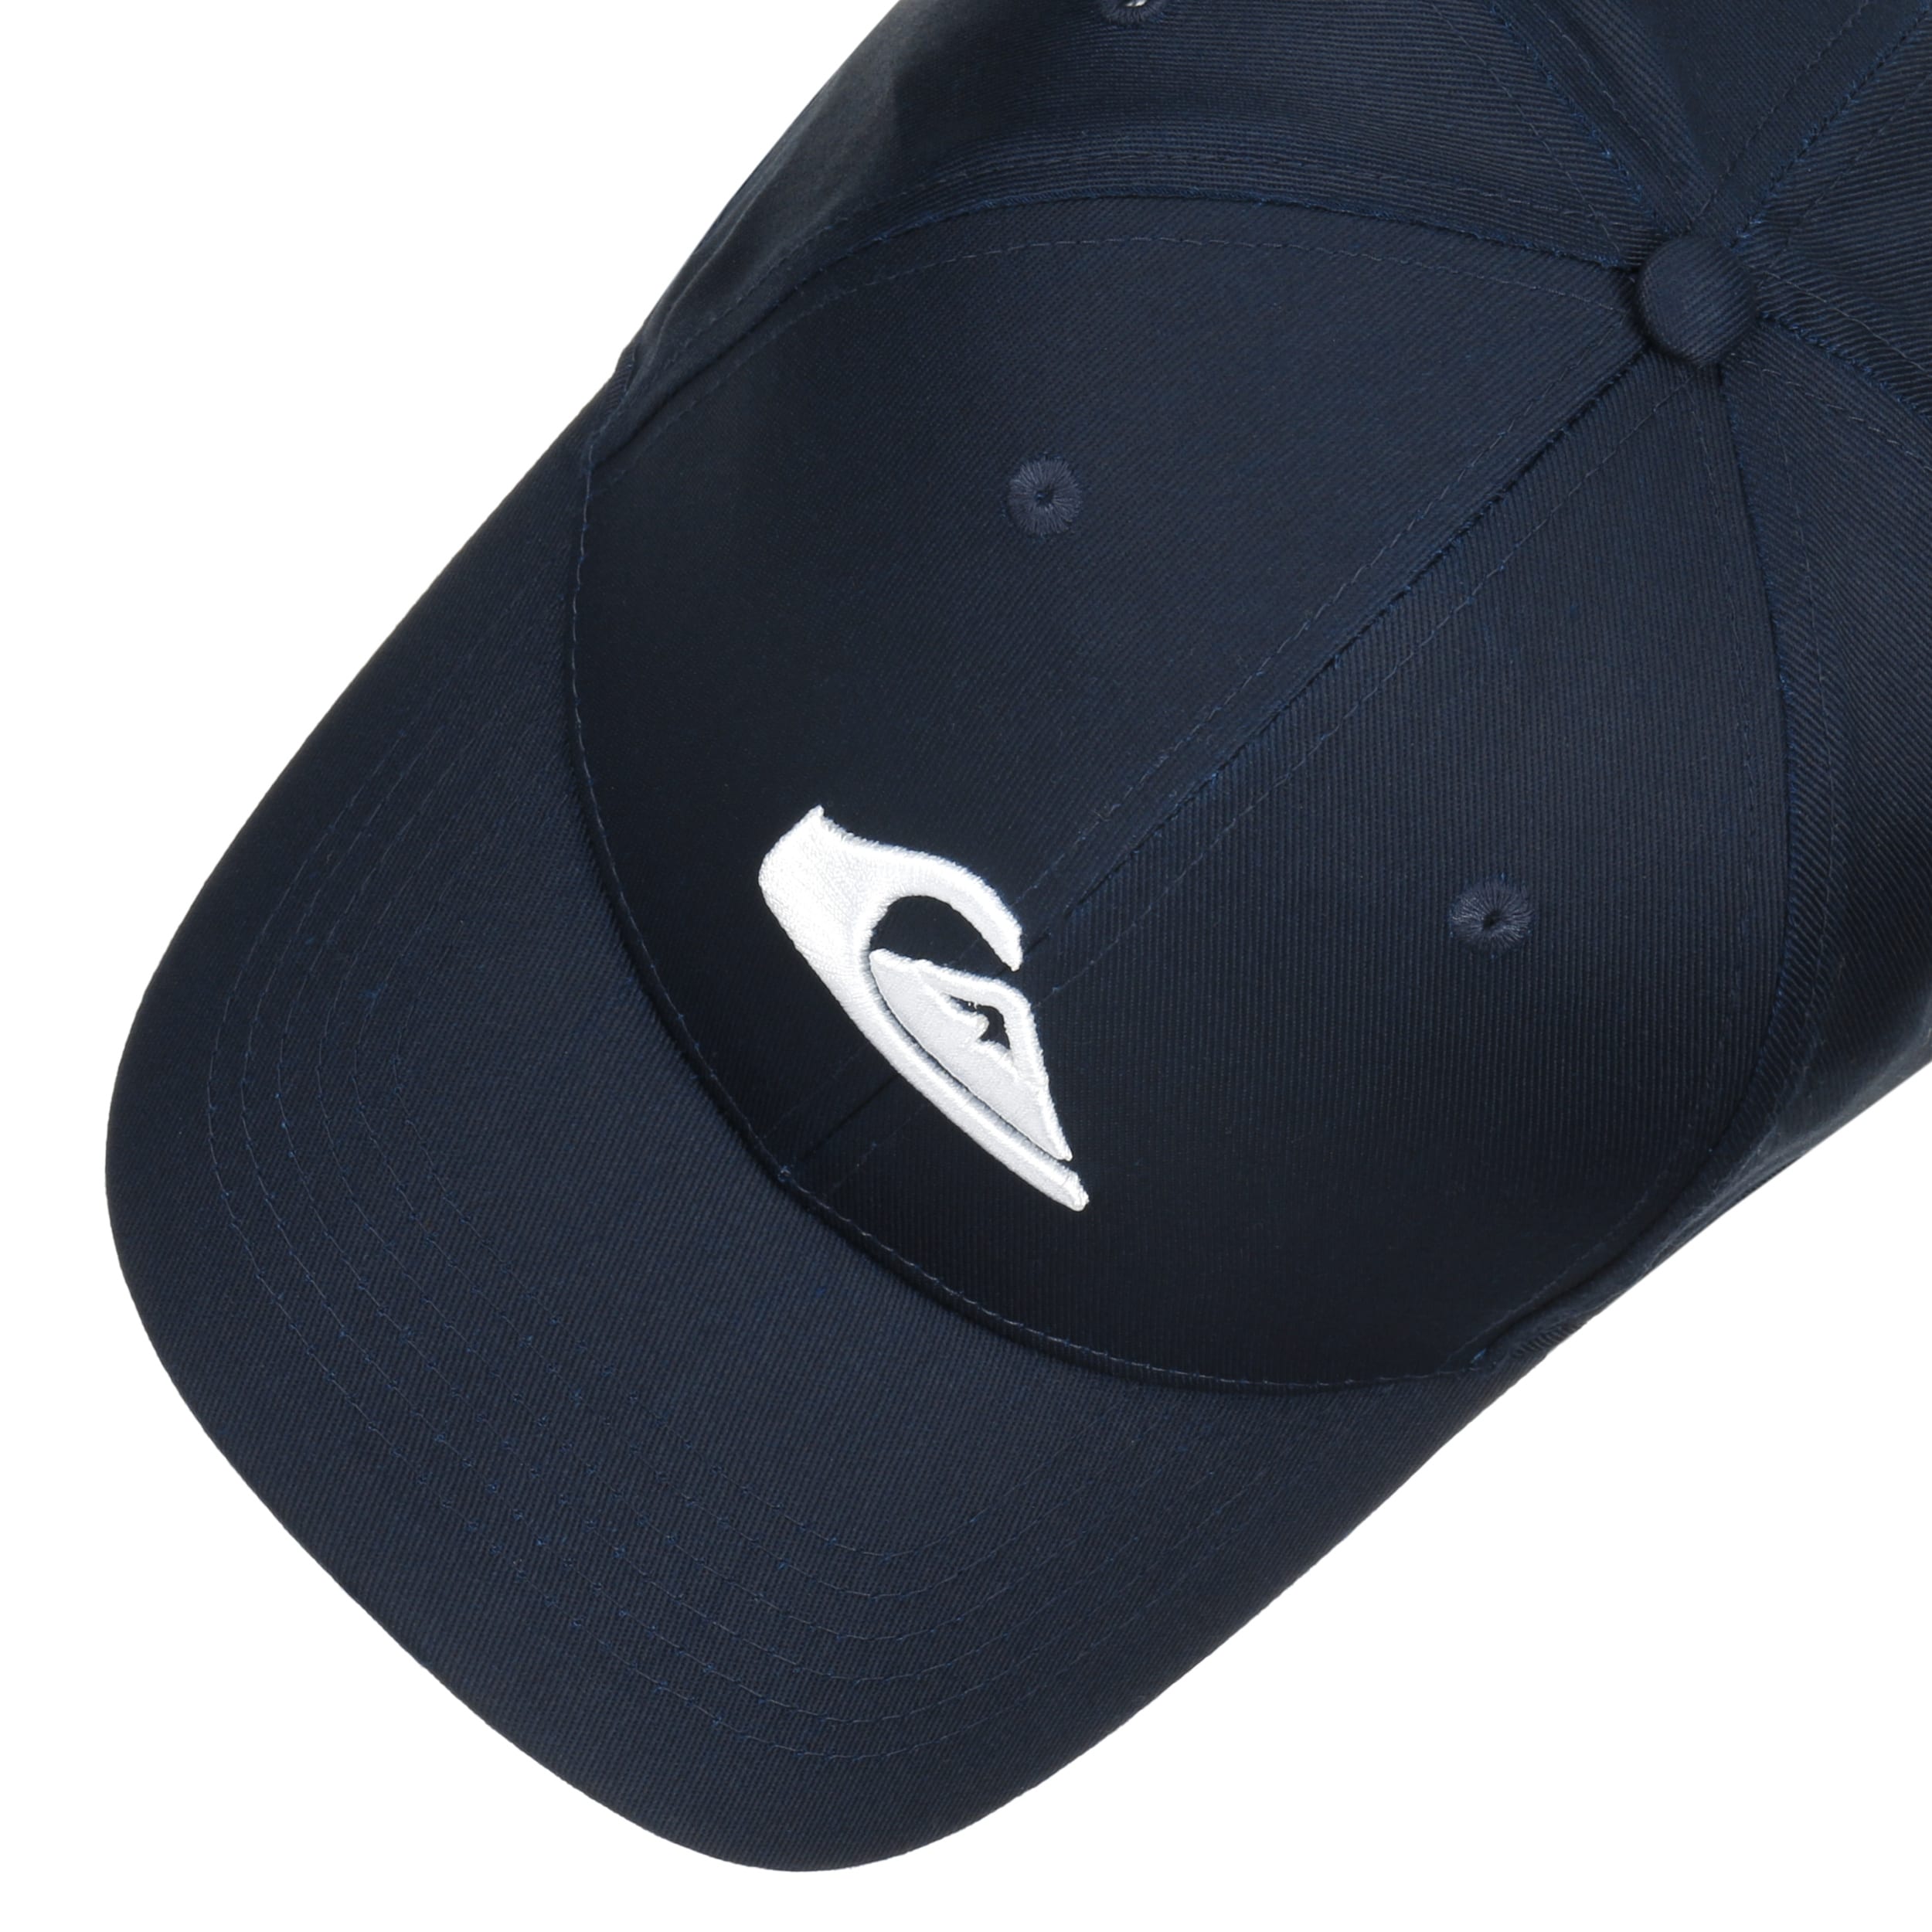 Decades Snapback Cap by Quiksilver - 29,95 € | Snapback Caps